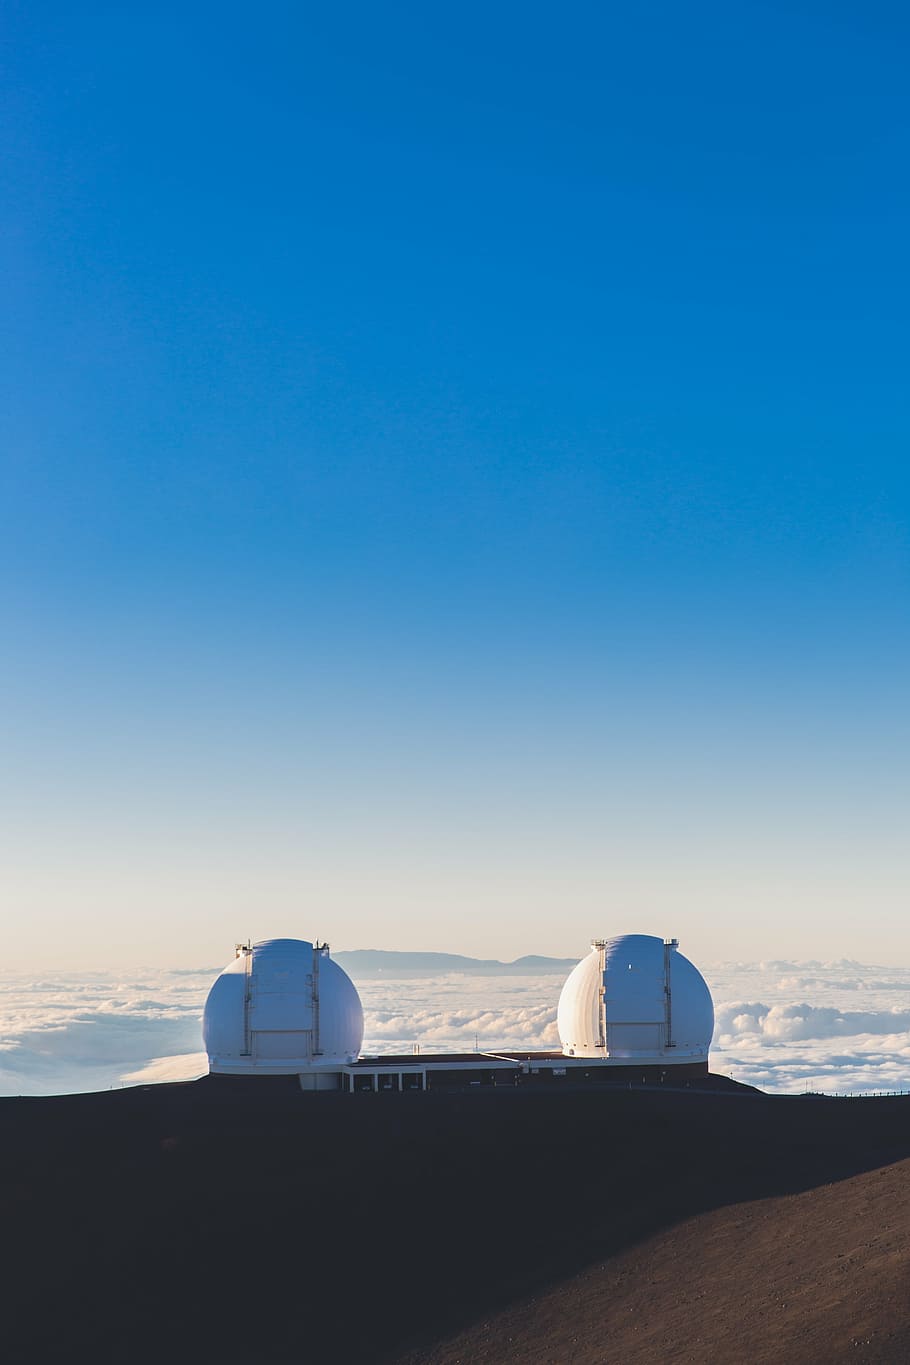 dois, branco, cúpulas do observatório, aéreo, fotografia, marrom, paisagem, ensolarado, céu, construção